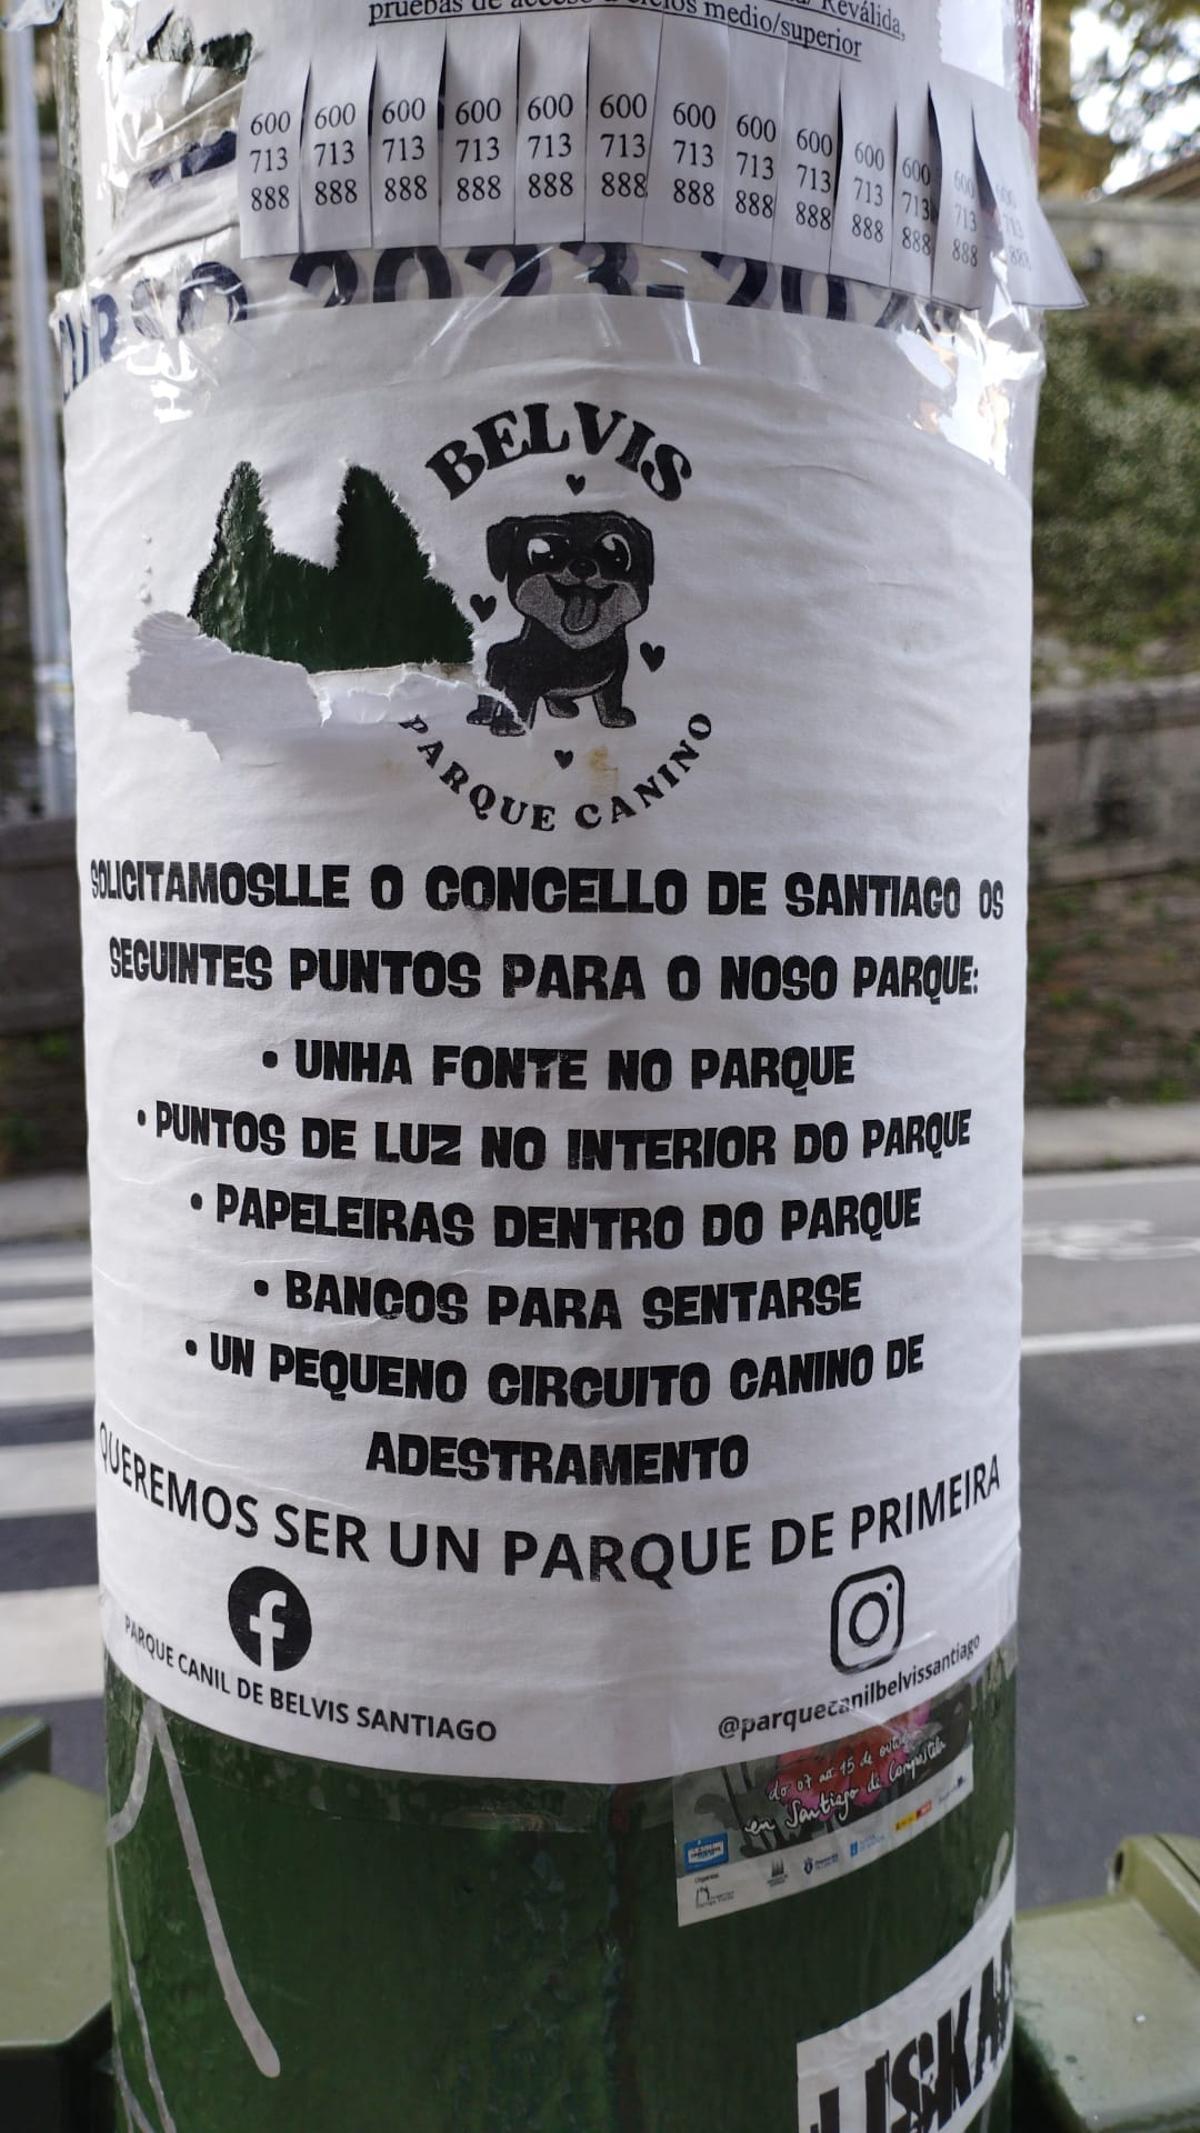 Uno de los carteles colocados por los usuario del parque canil de Belvís